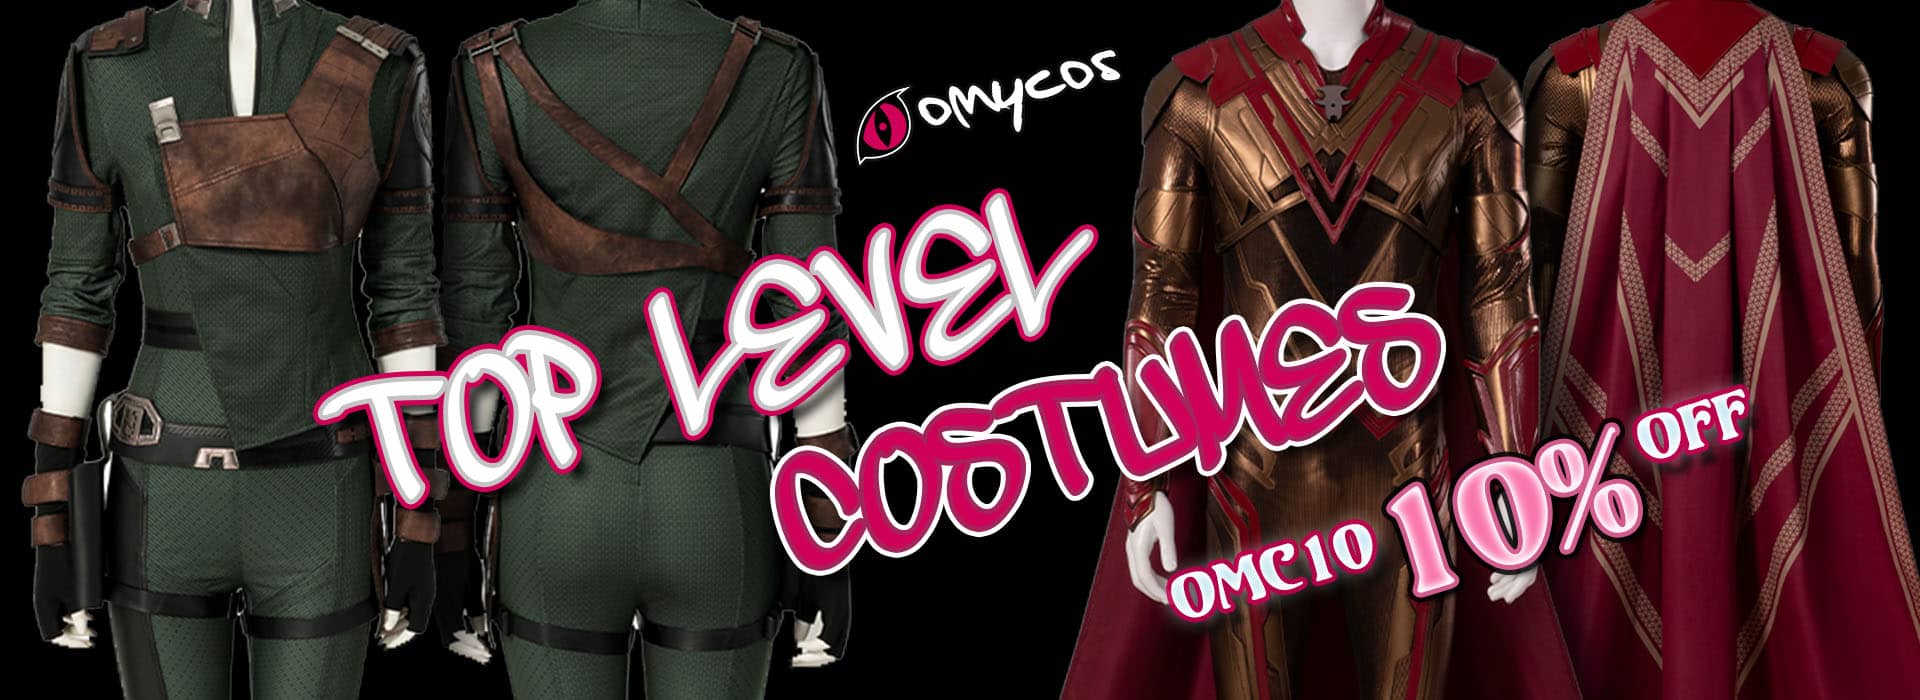 top level costumes om omycos.com